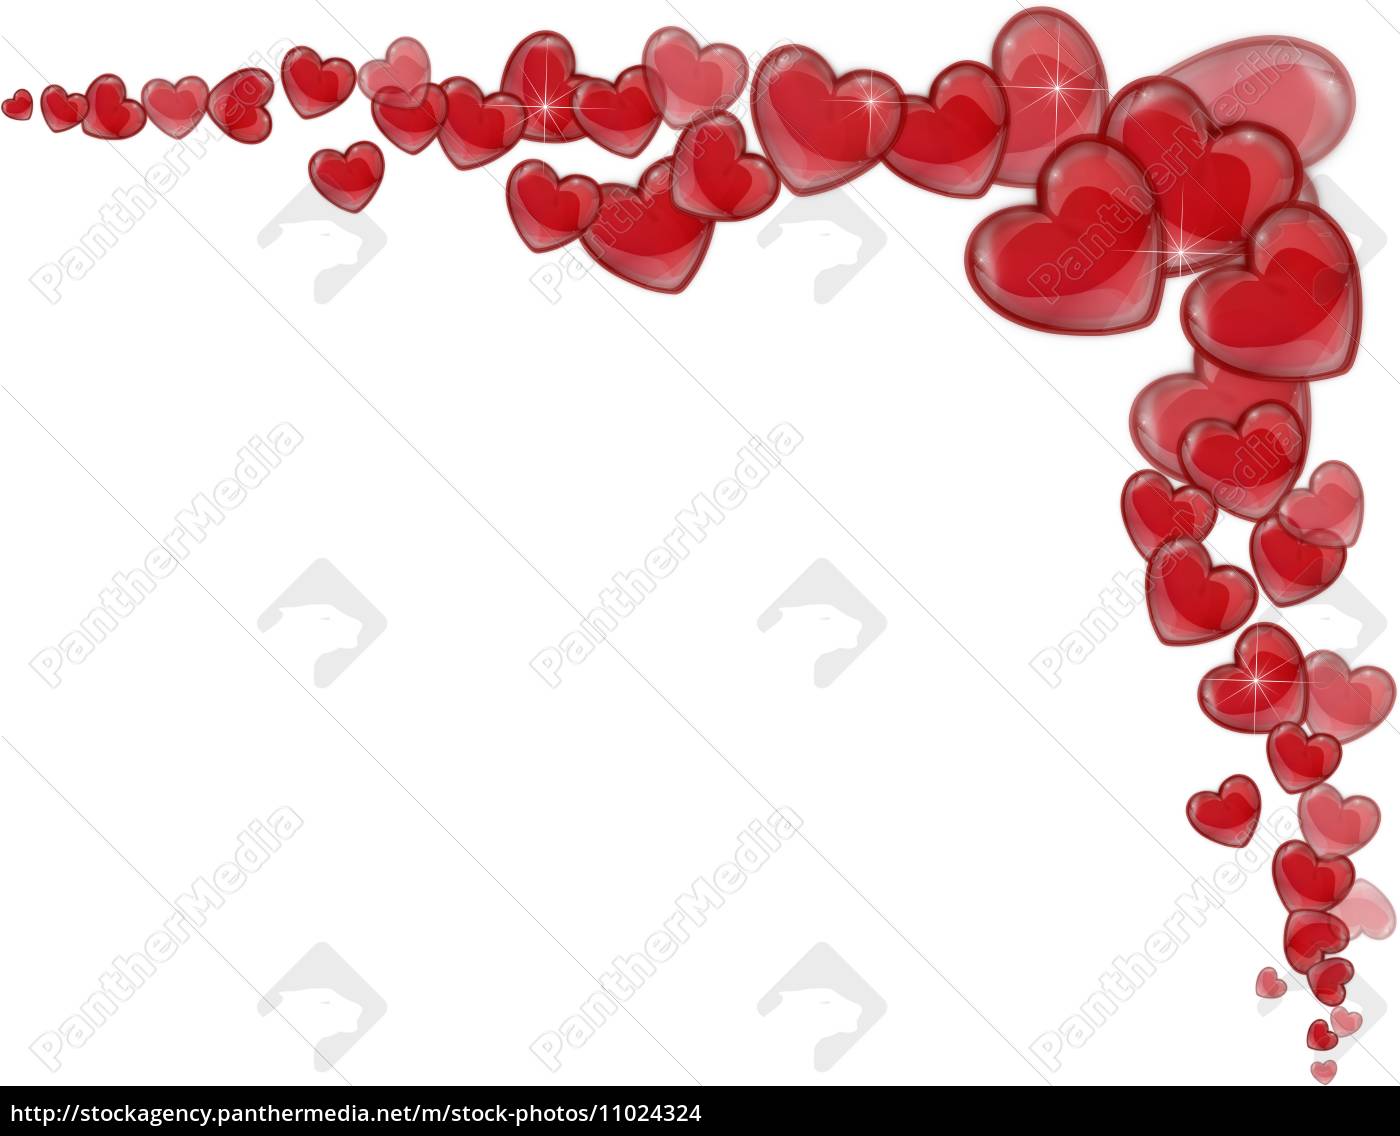 Hjørne af røde hjerter på en hvid baggrund - Stockphoto #11024324 | PantherMedia Billedbureau